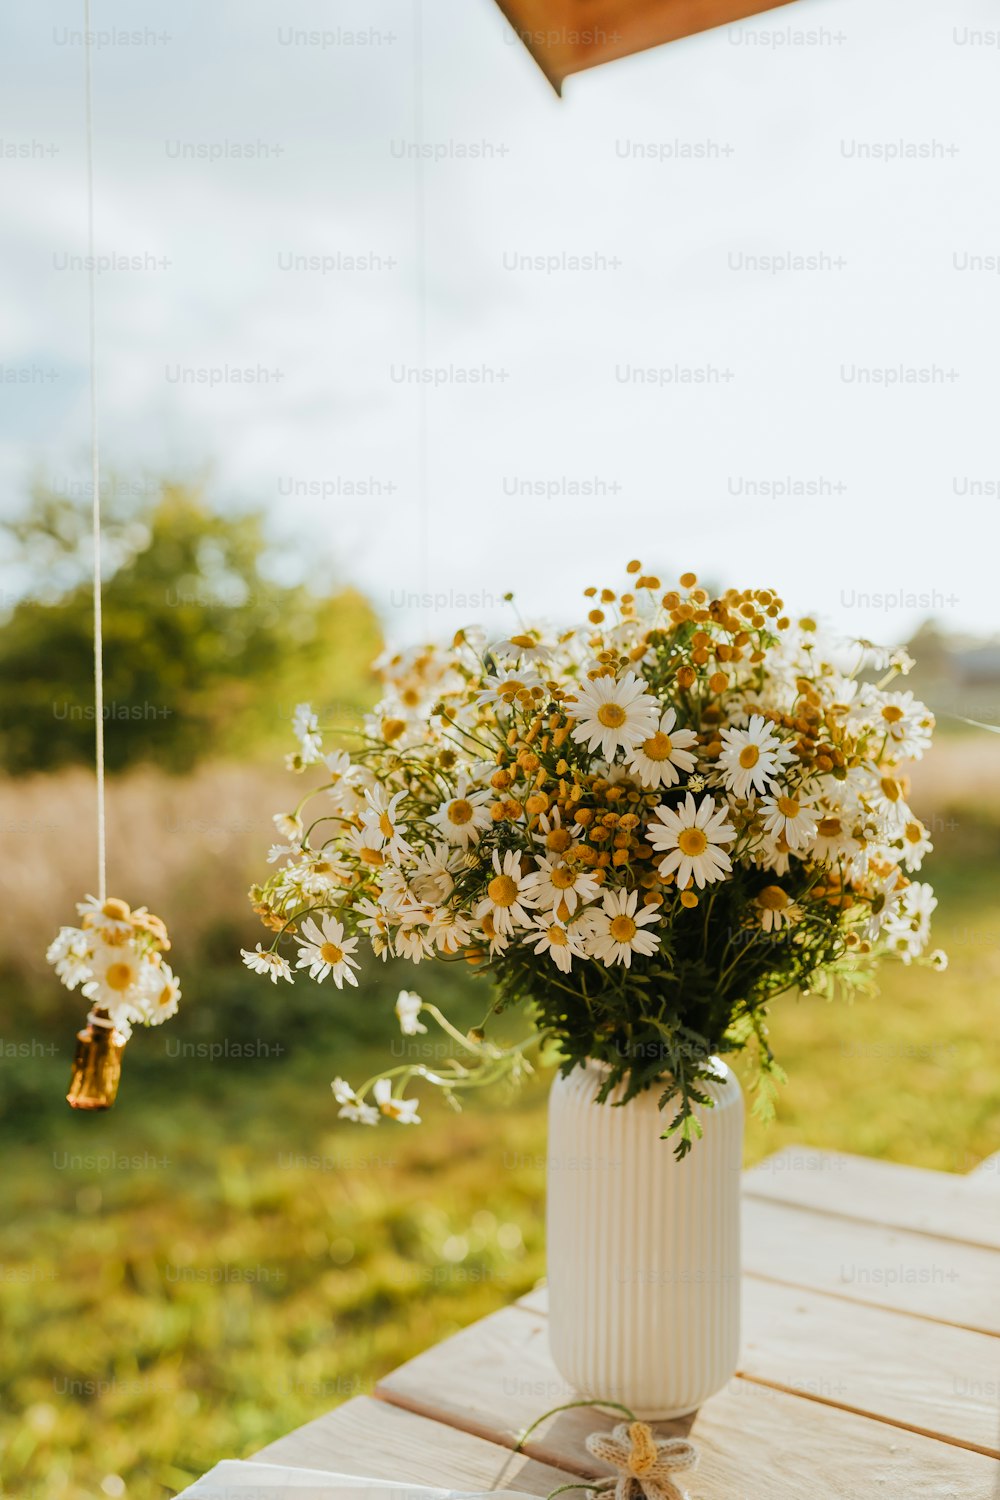 Un jarrón blanco lleno de muchas flores encima de una mesa de madera